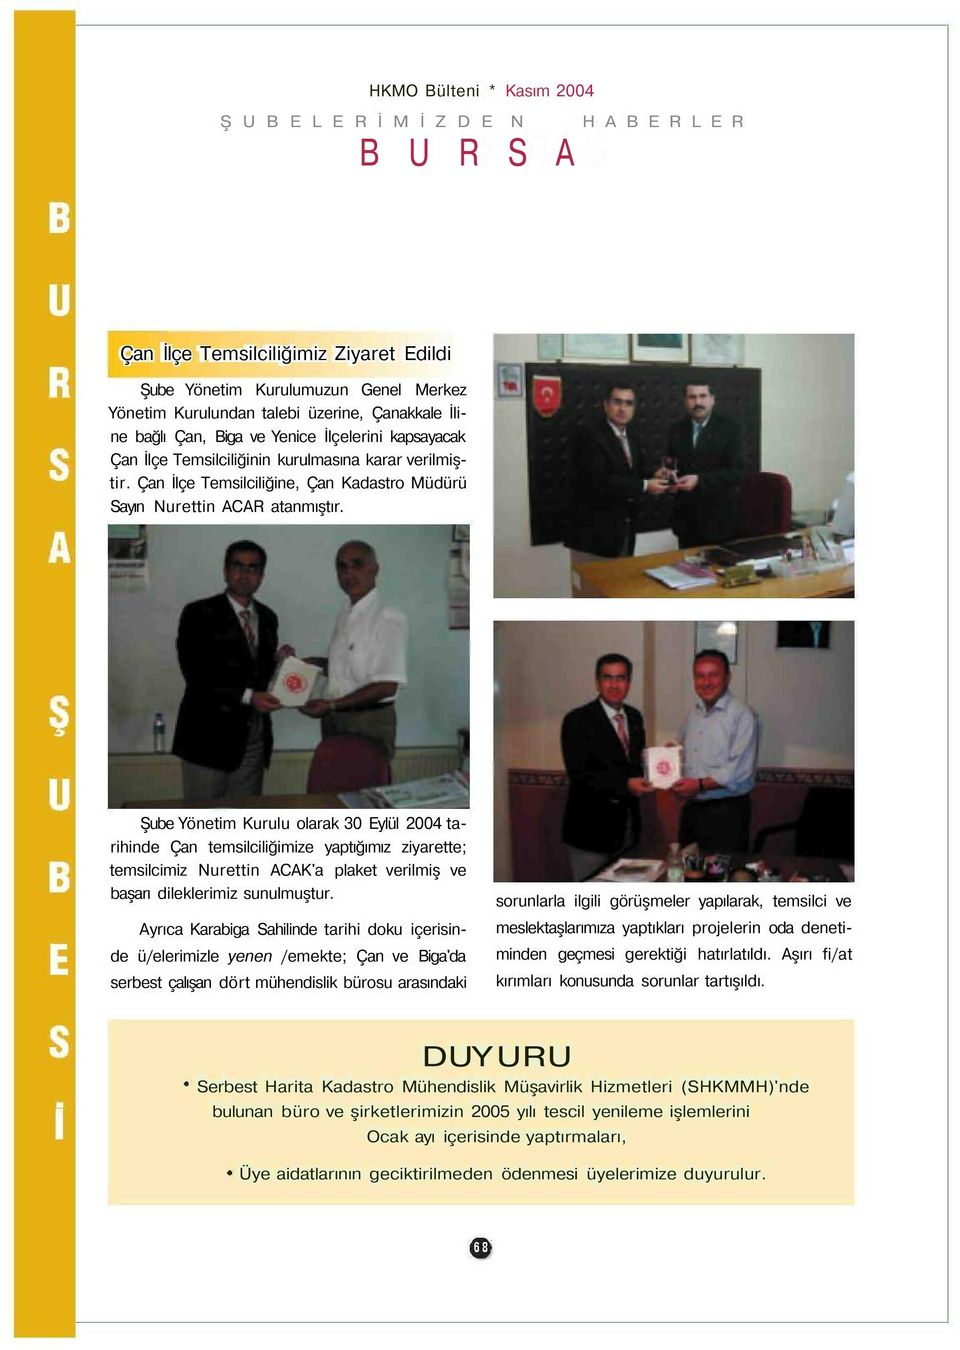 Şube Yönetim Kurulu olarak 30 Eylül 2004 tarihinde Çan temsilciliğimize yaptığımız ziyarette; temsilcimiz Nurettin ACAK'a plaket verilmiş ve başarı dileklerimiz sunulmuştur.